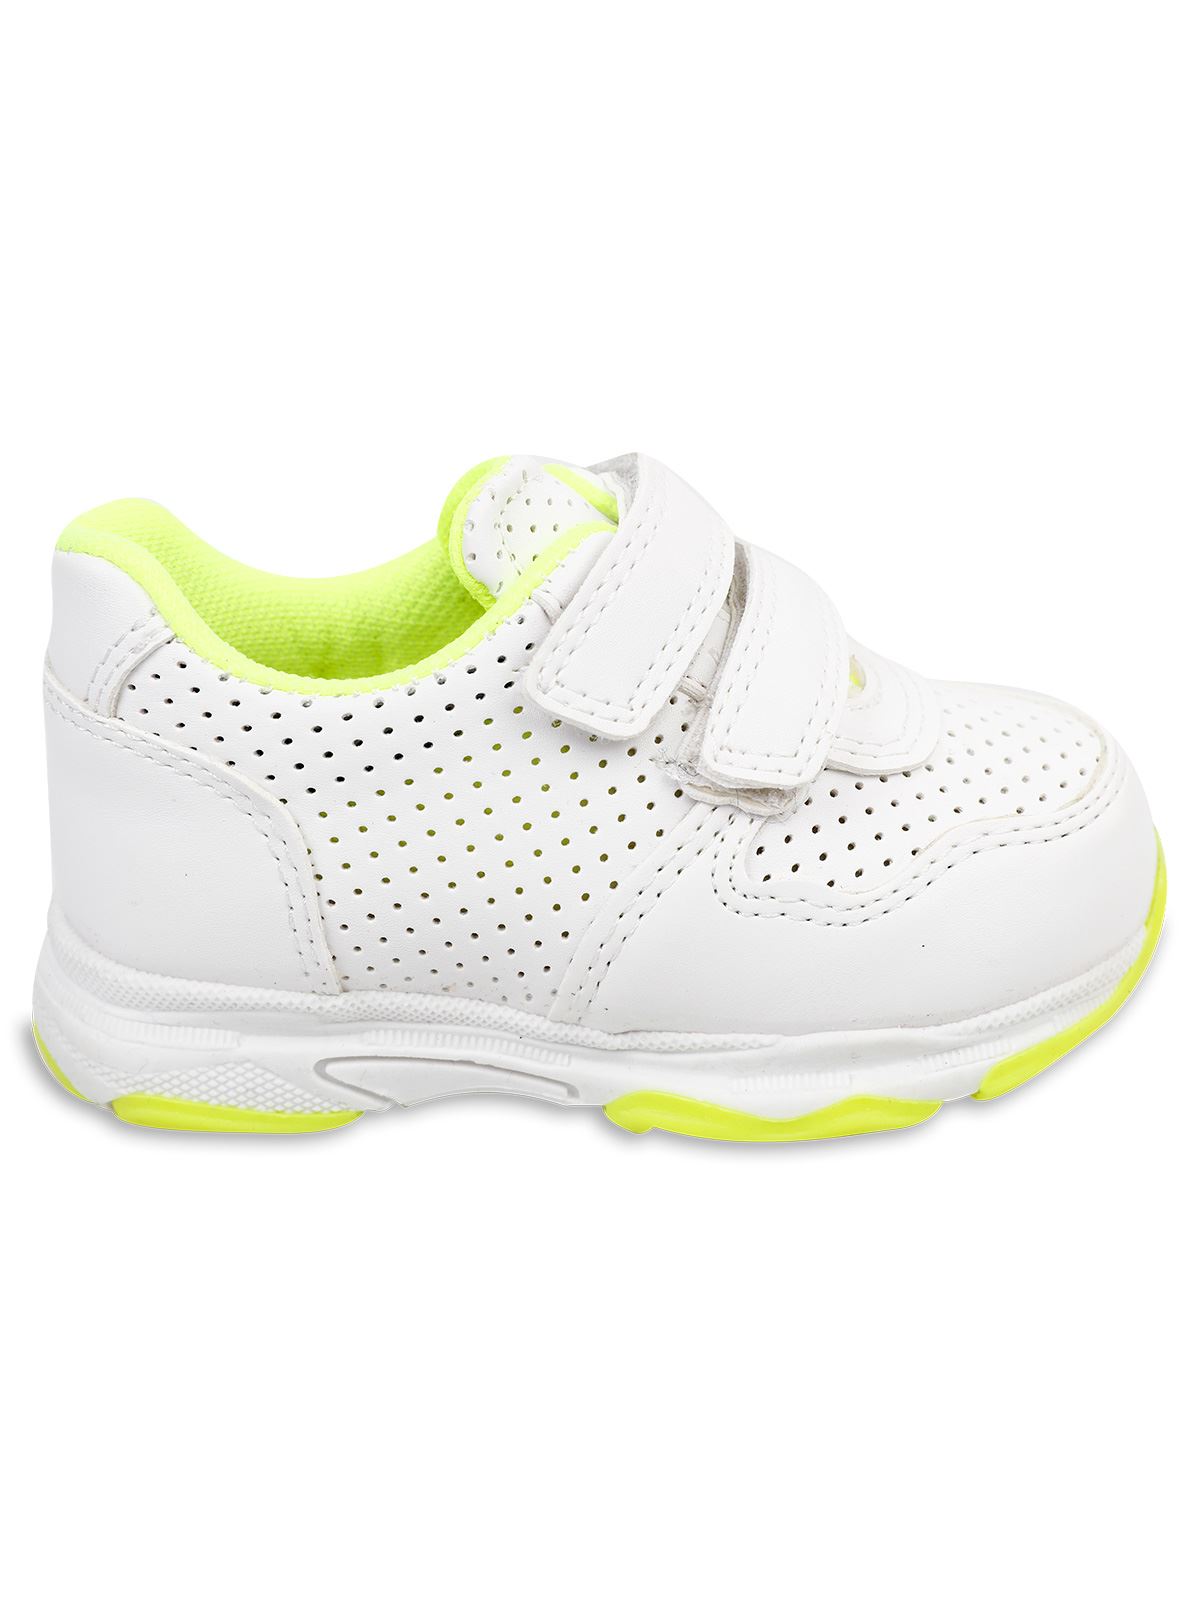 Harli Kız Çocuk Spor Ayakkabı 21-25 Numara Beyaz